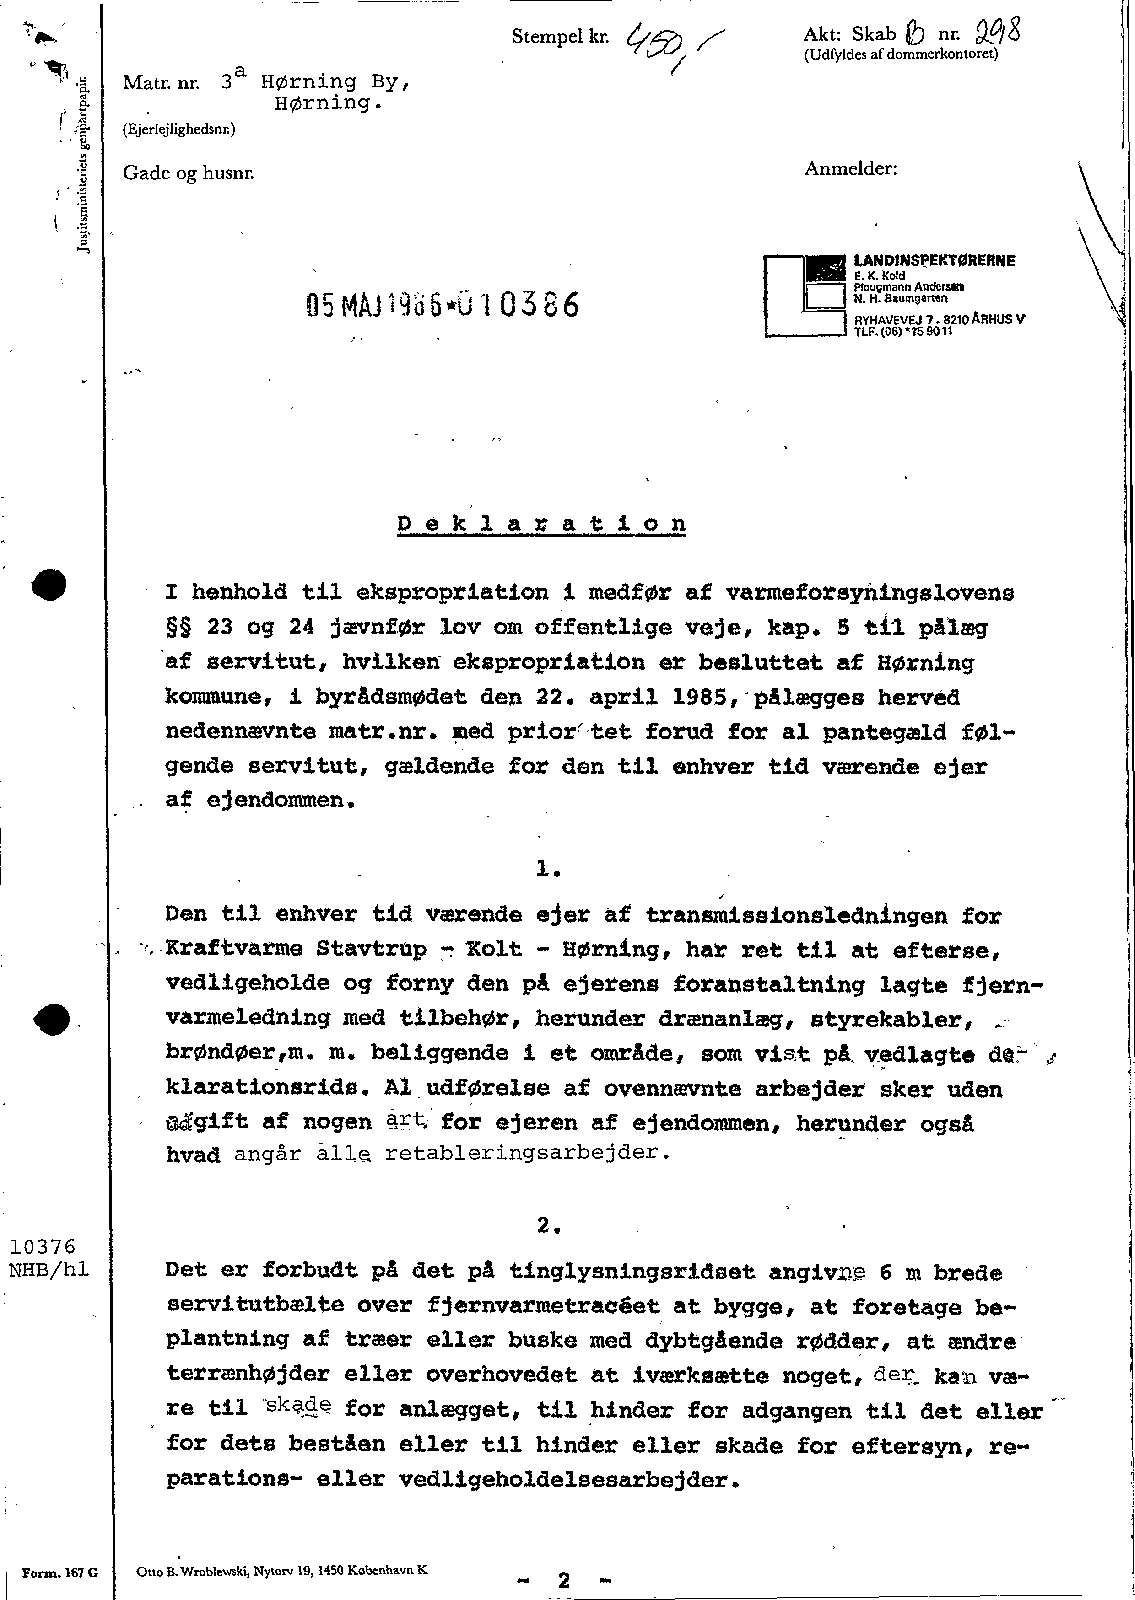 05.05.1986 Ekspropriationsfortegnelse, dok om fjernvarme mv., prioritet forud for pantegæld